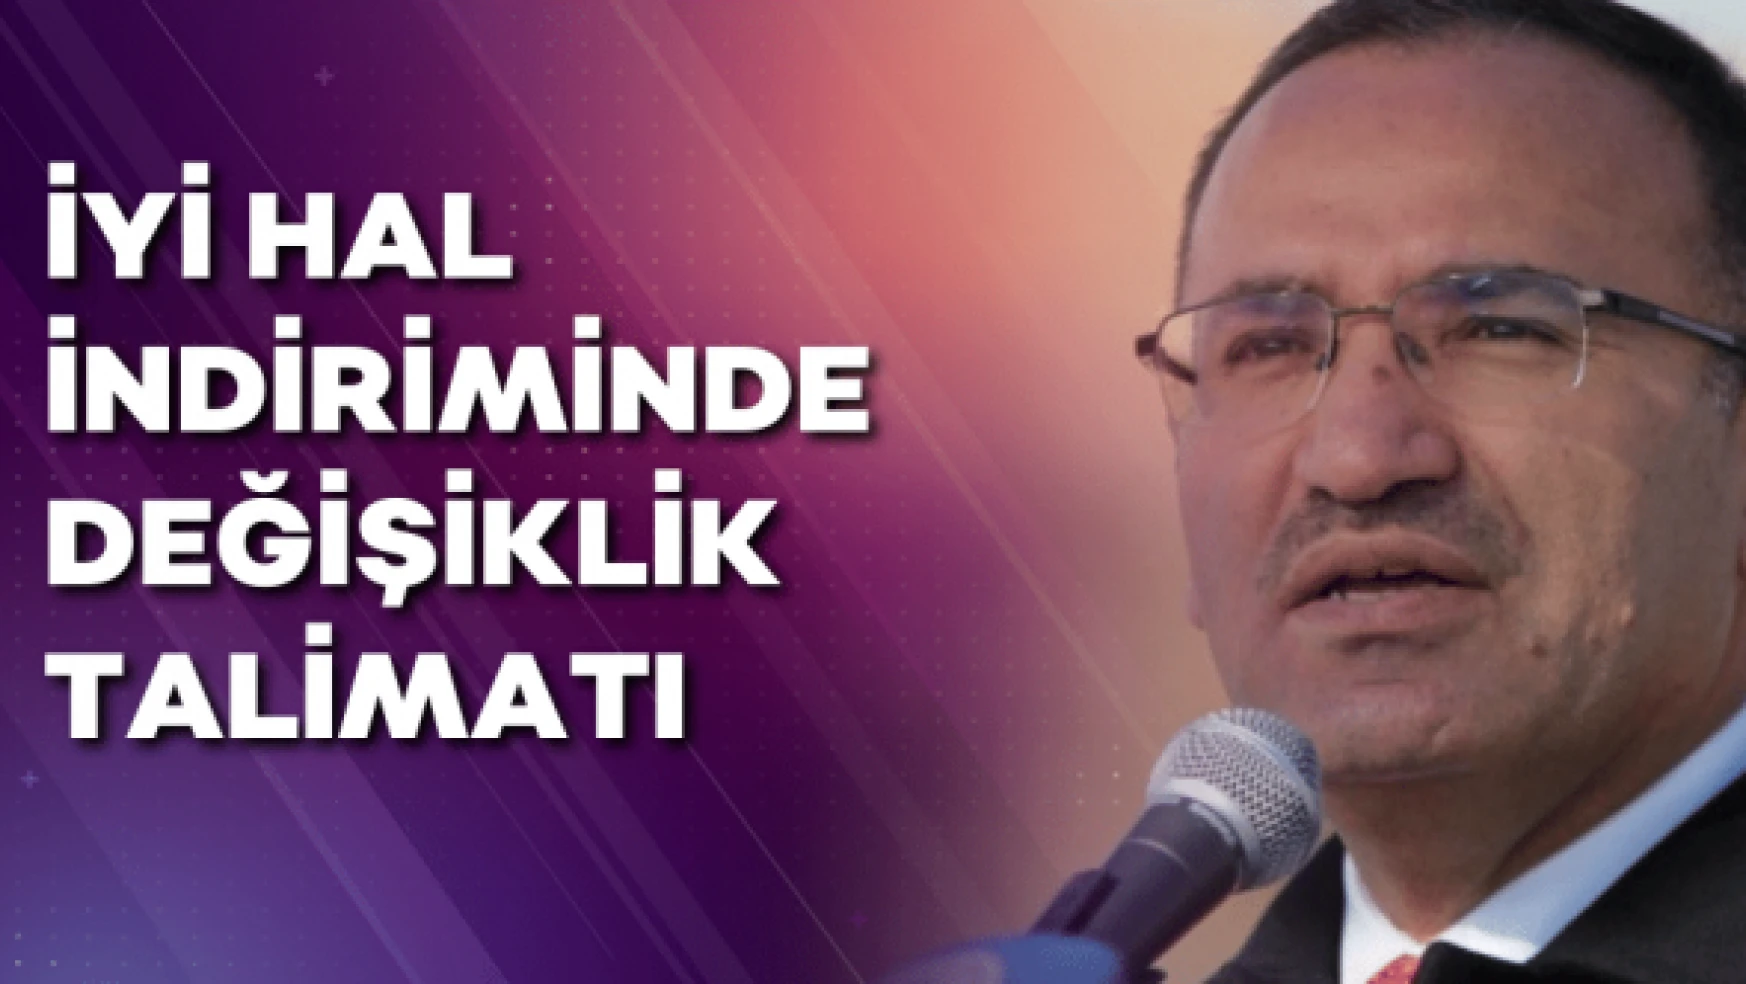 Adalet Bakanı Bozdağ'dan talimat: İyi hal indiriminde değişikliğe gidilecek